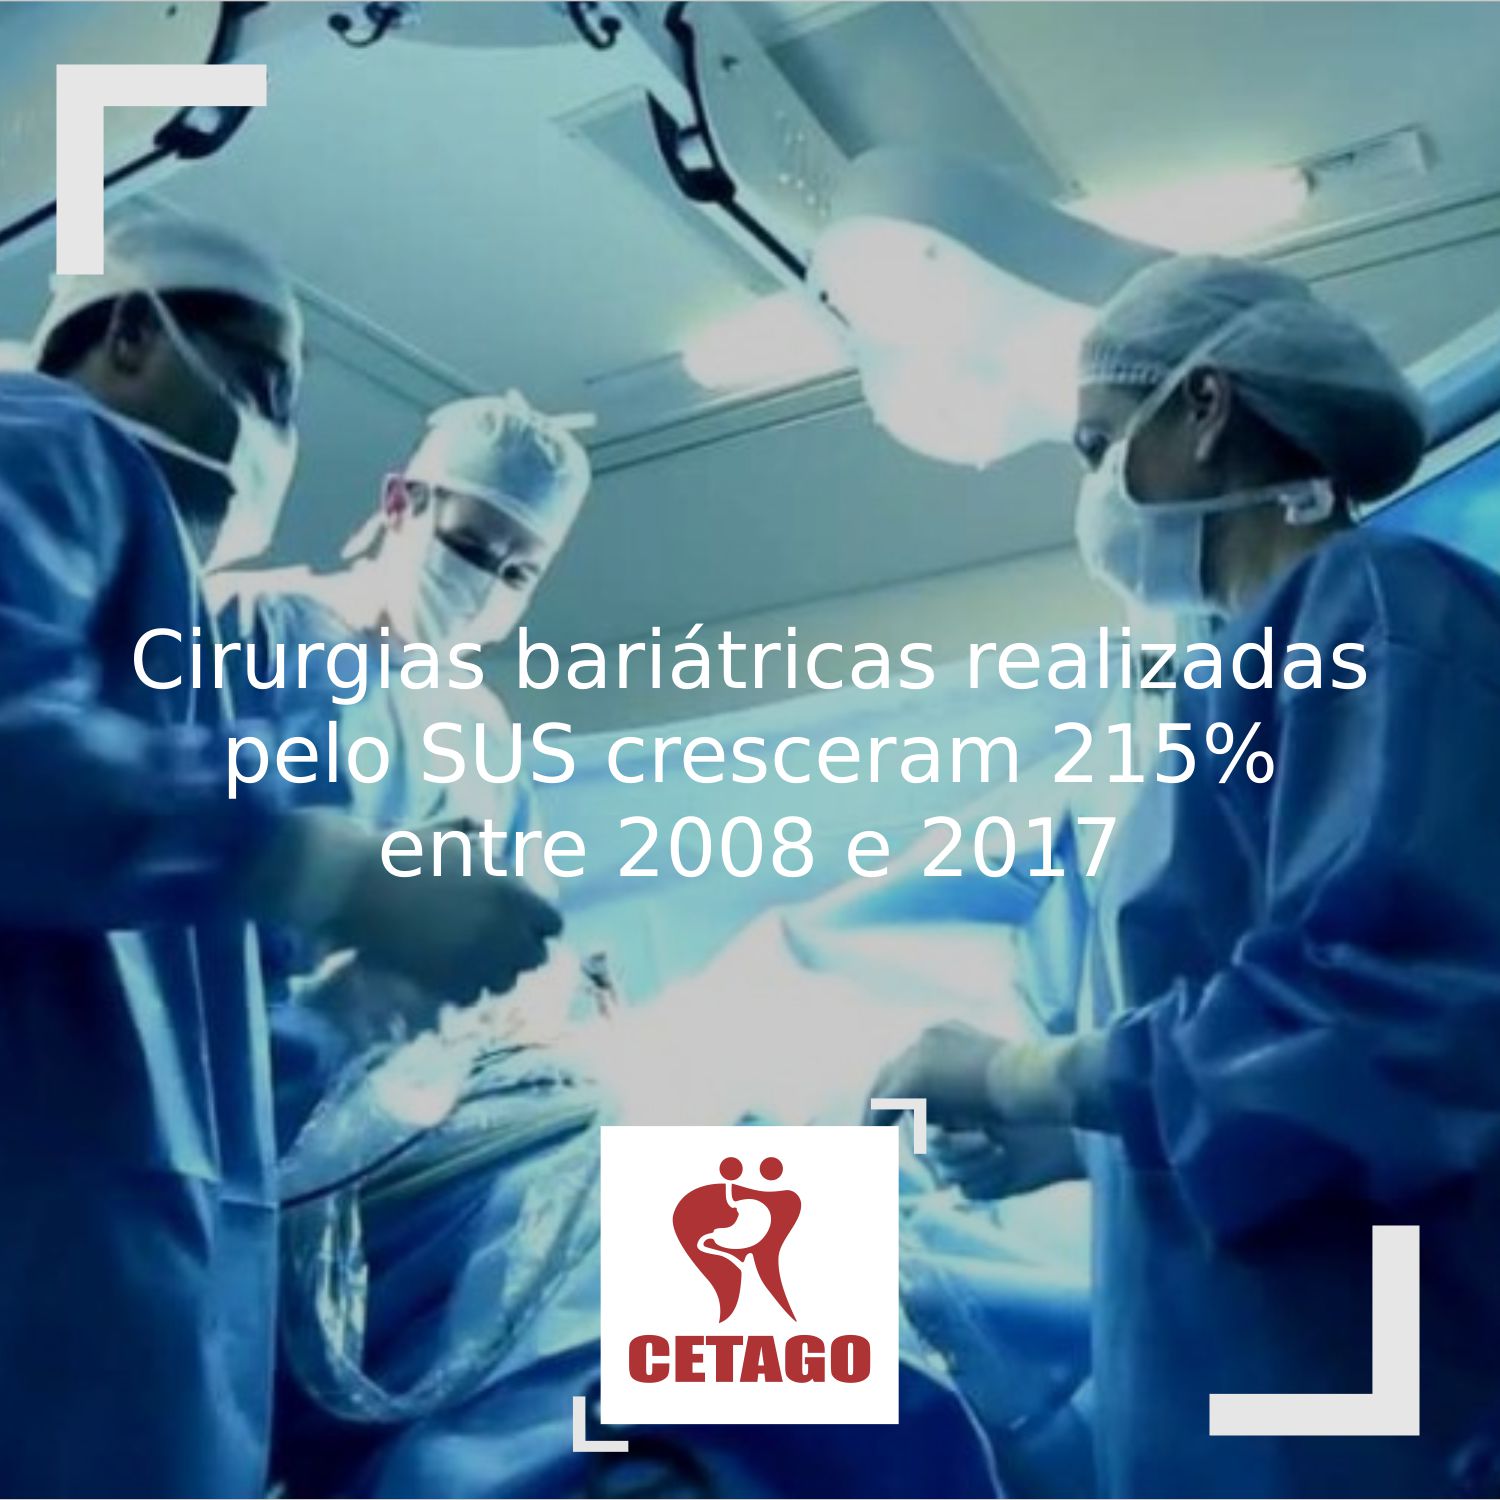 Cirurgias bariátricas realizadas pelo SUS cresceram 215% entre 2008 e 2017